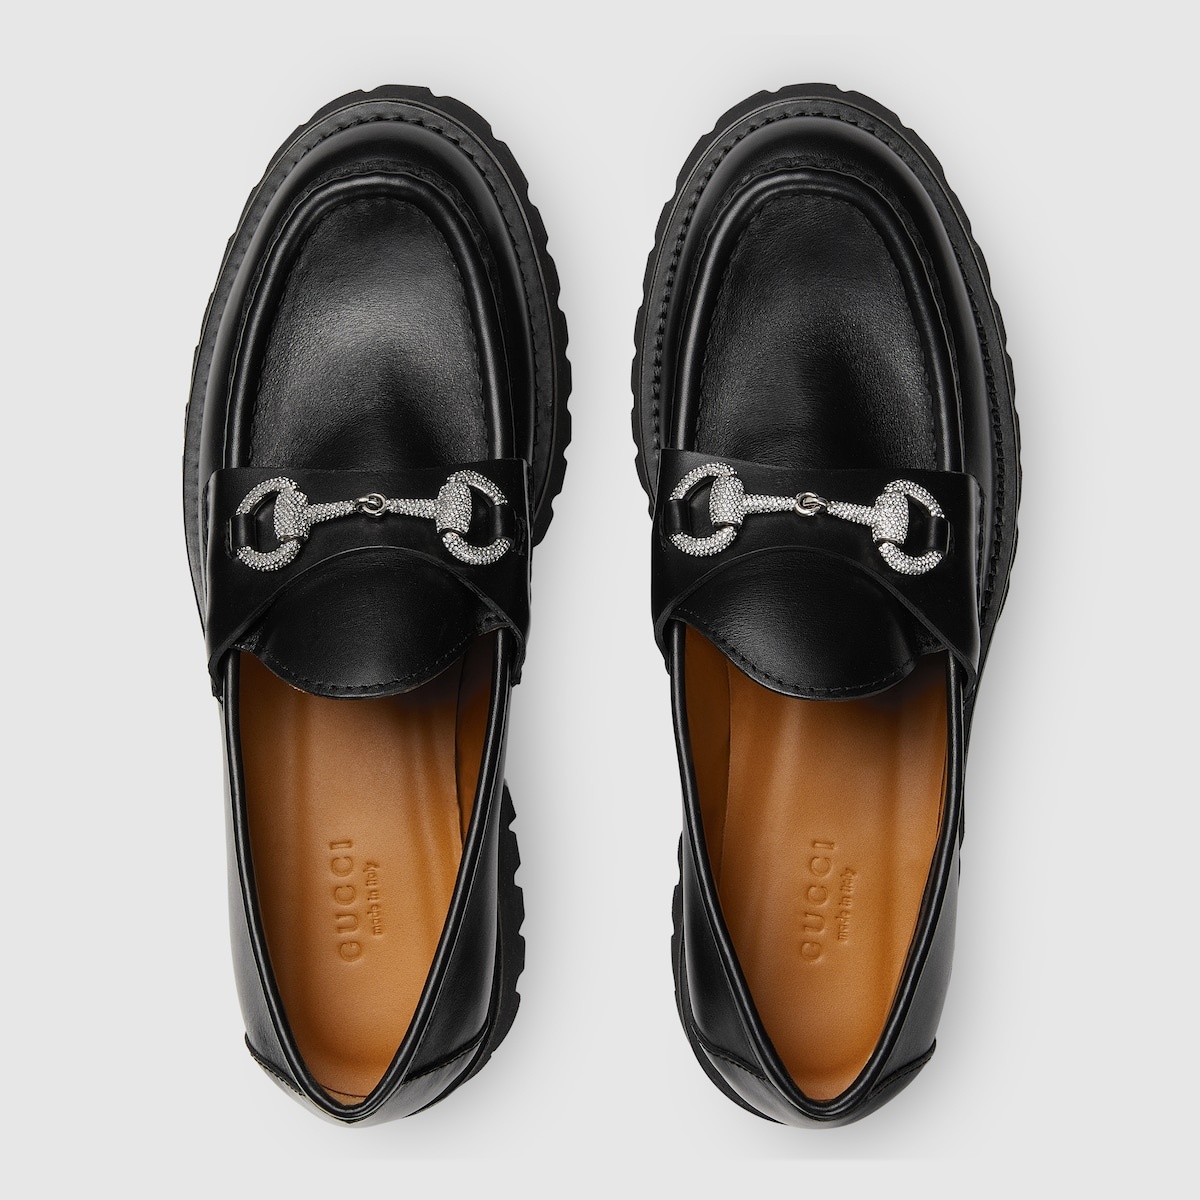 Women's lug sole loafer - 5